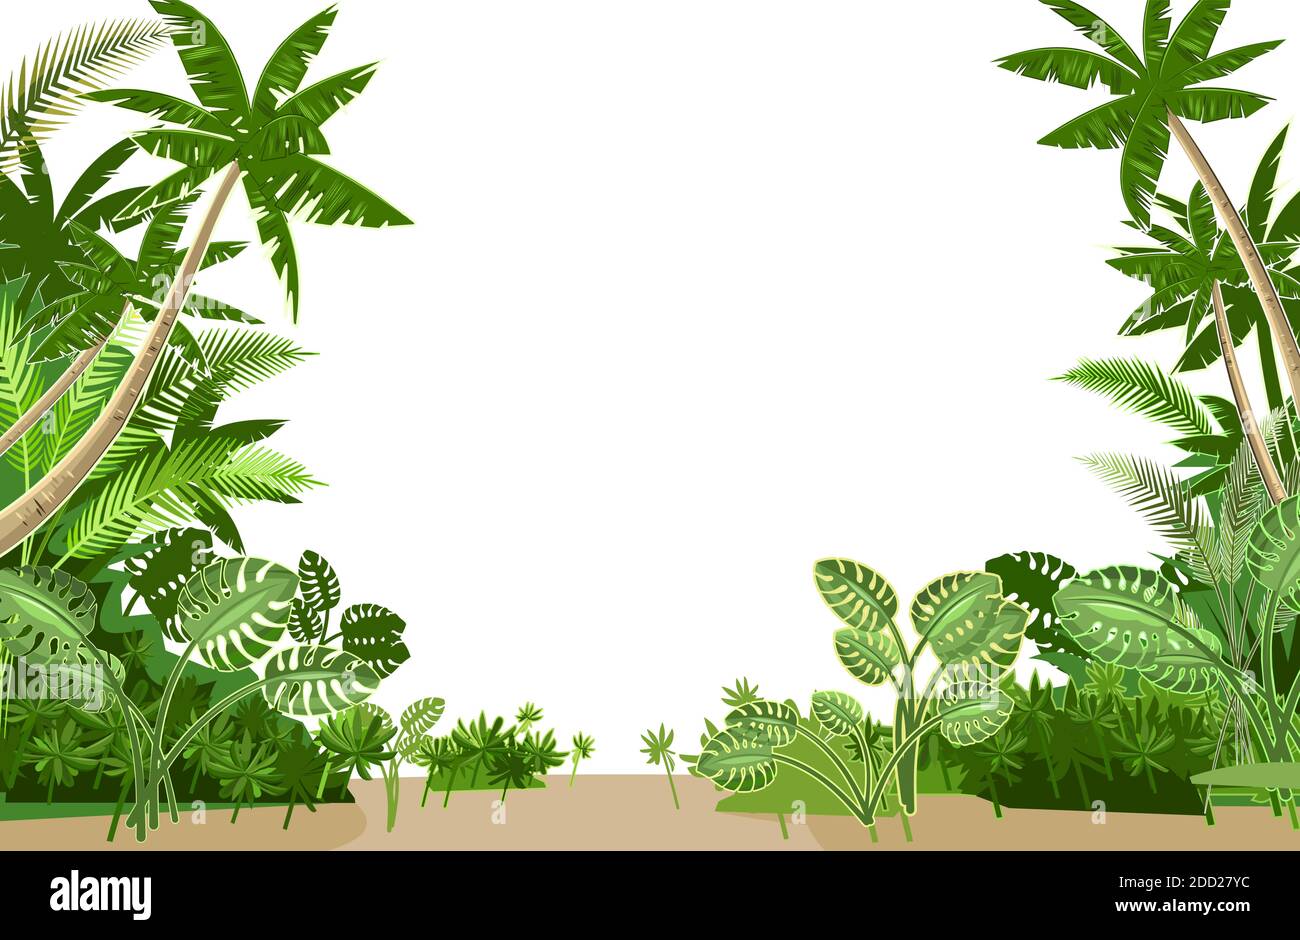 Dschungel. Rahmen aus tropischen Pflanzen und Palmen. Pflanzen wachsen im  Sand. Flacher Style. Isoliert auf weißem Hintergrund Stock-Vektorgrafik -  Alamy